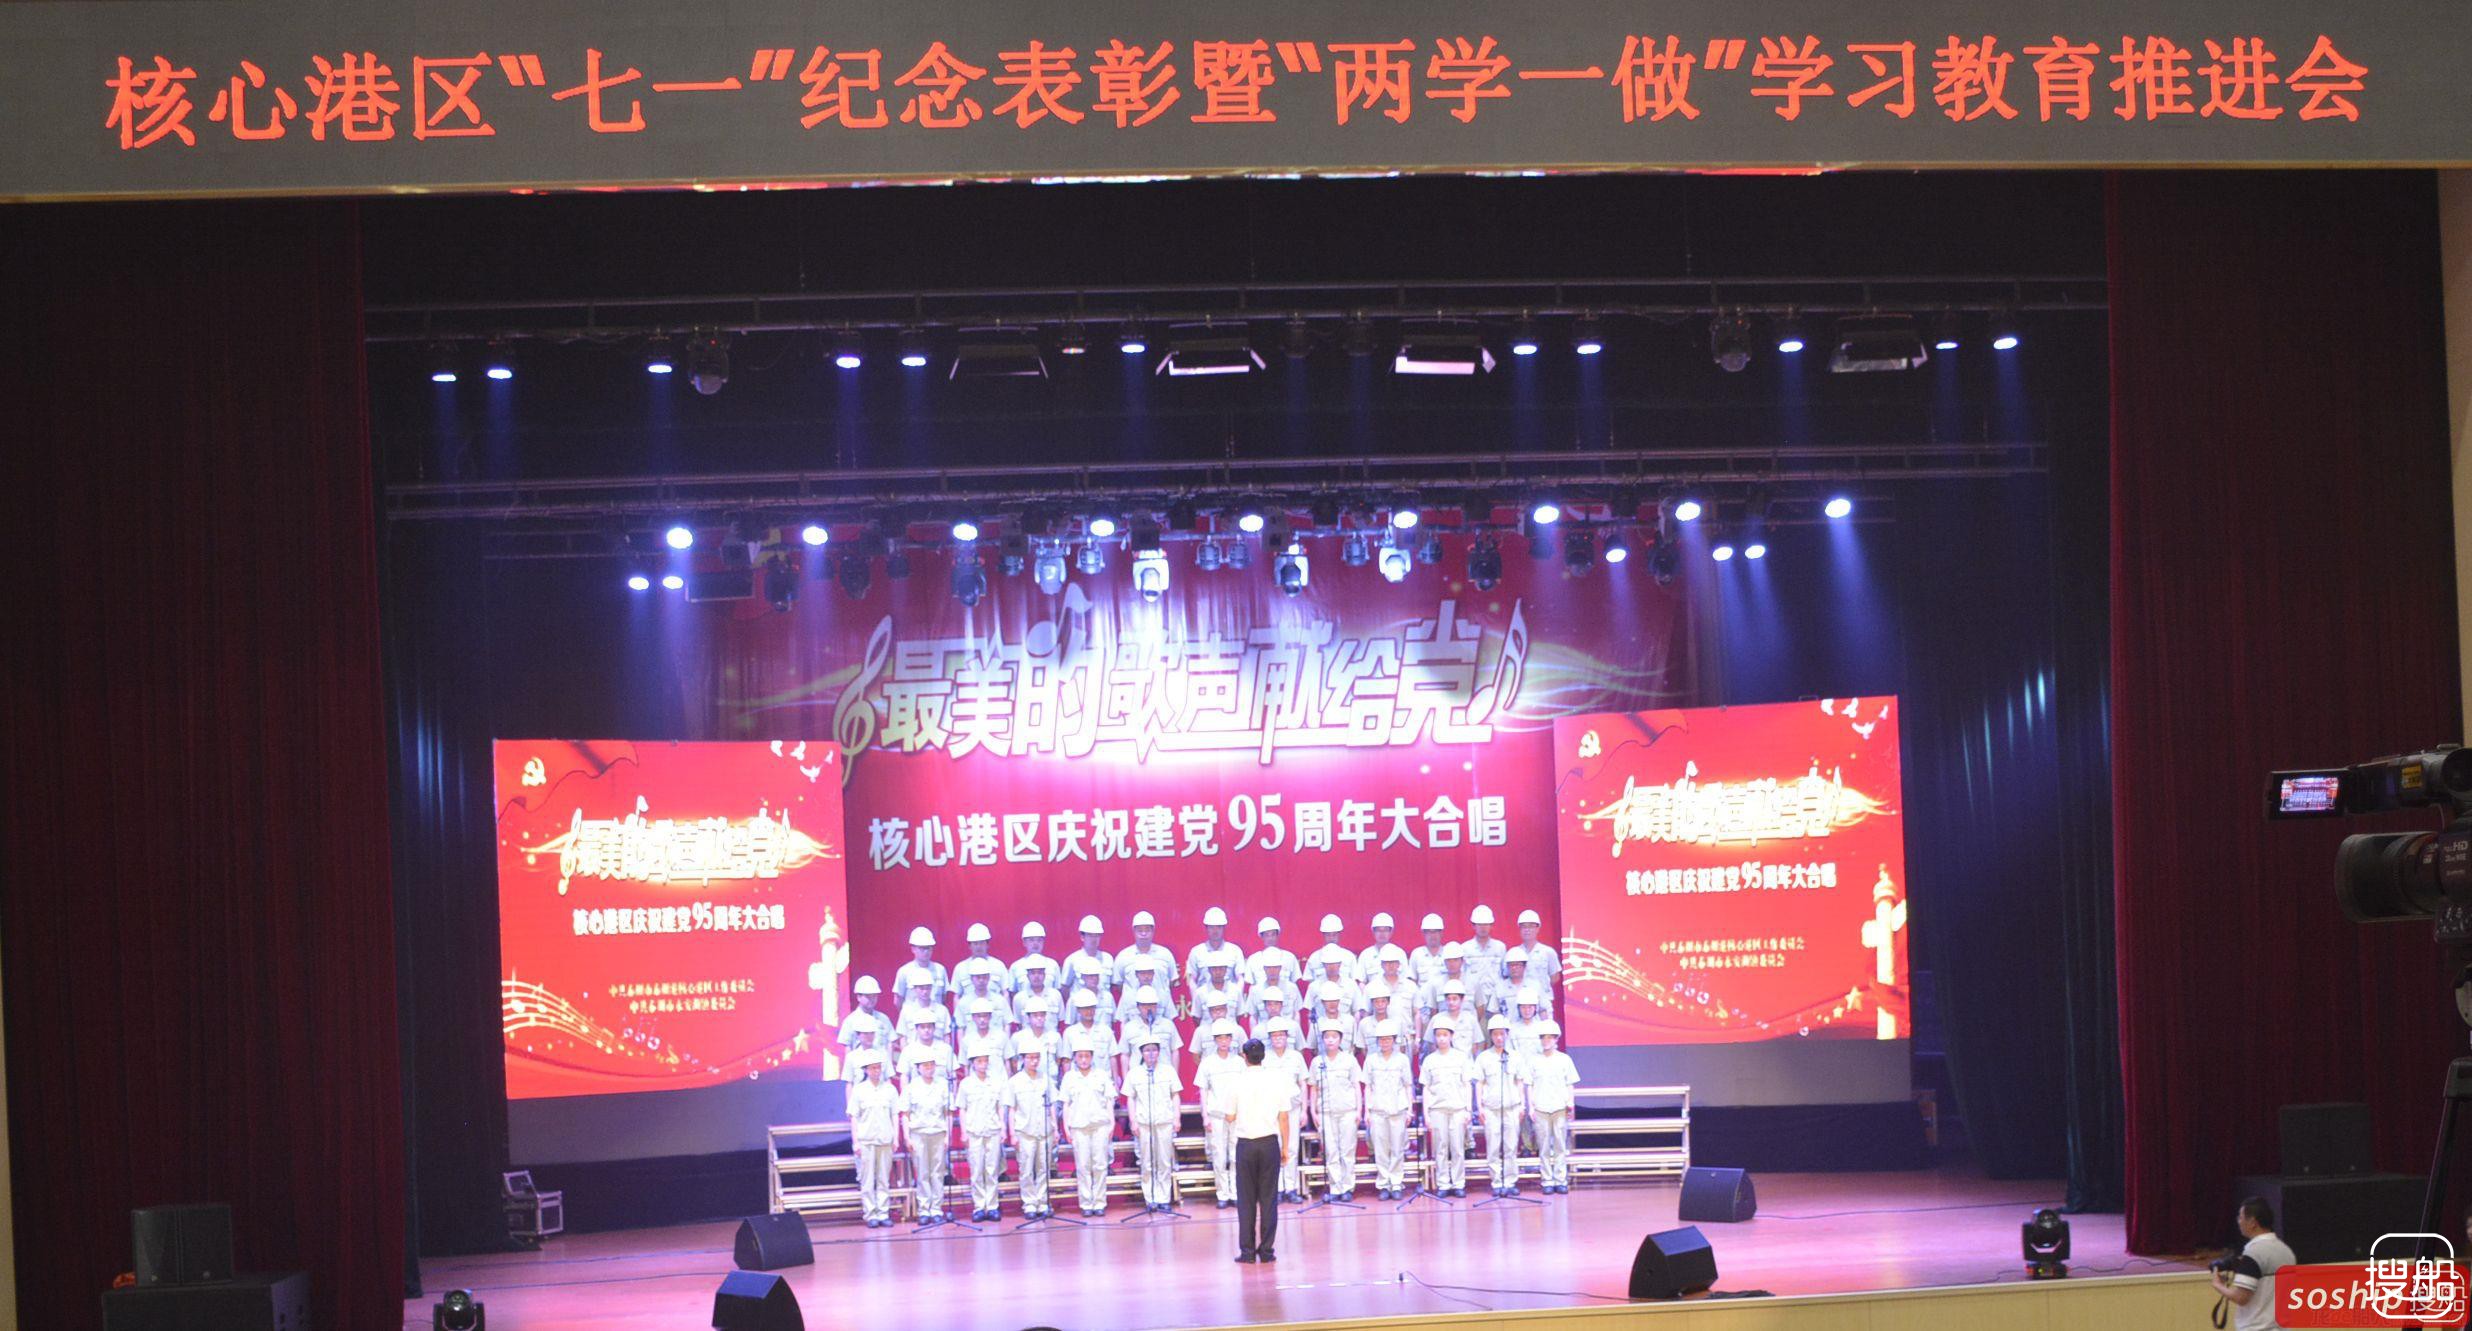 三福船舶参加核心港区庆祝建党95周年大合唱